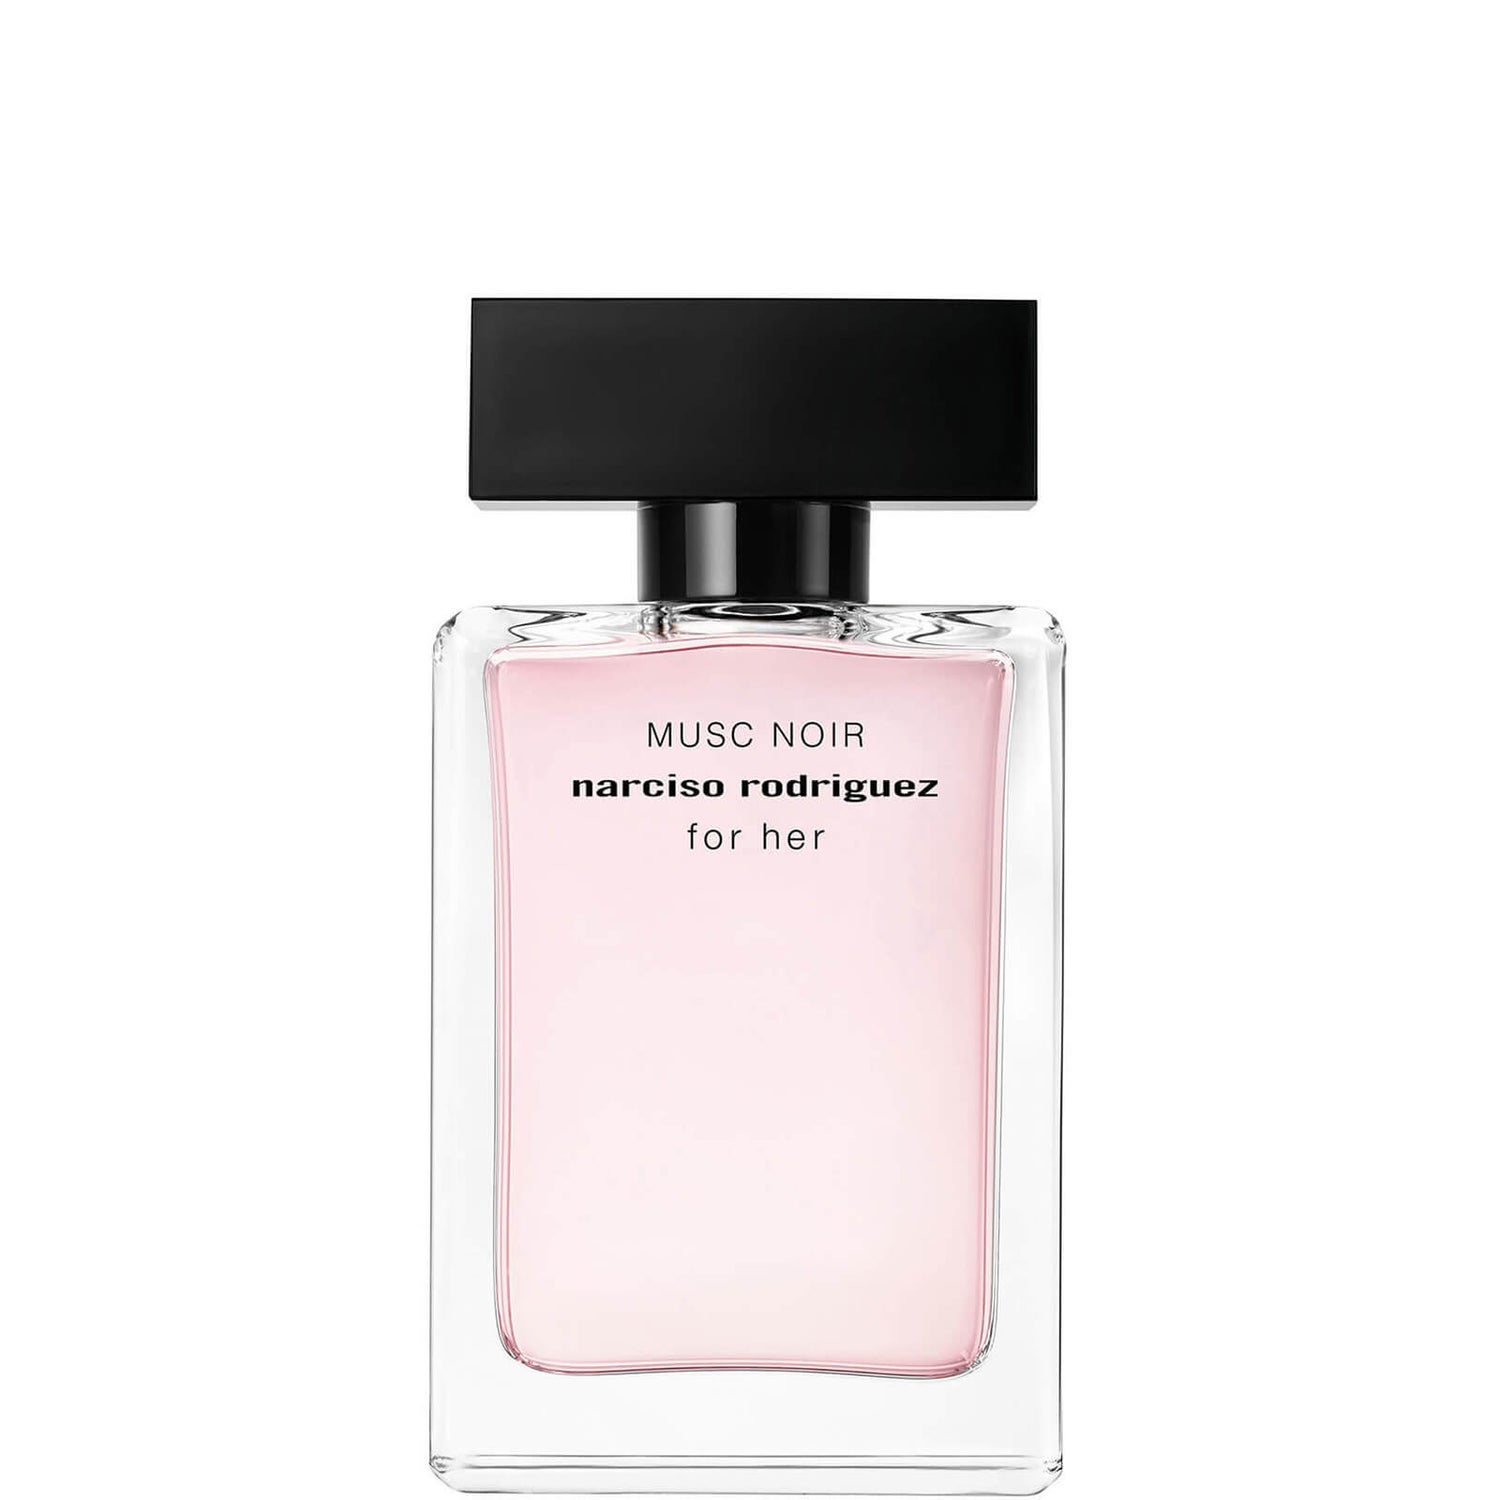 Narciso Rodriguez for Her Musc Noir Eau de Parfum - 50ml Narciso Rodriguez for Her Musc Noir parfémovaná voda - 50 ml